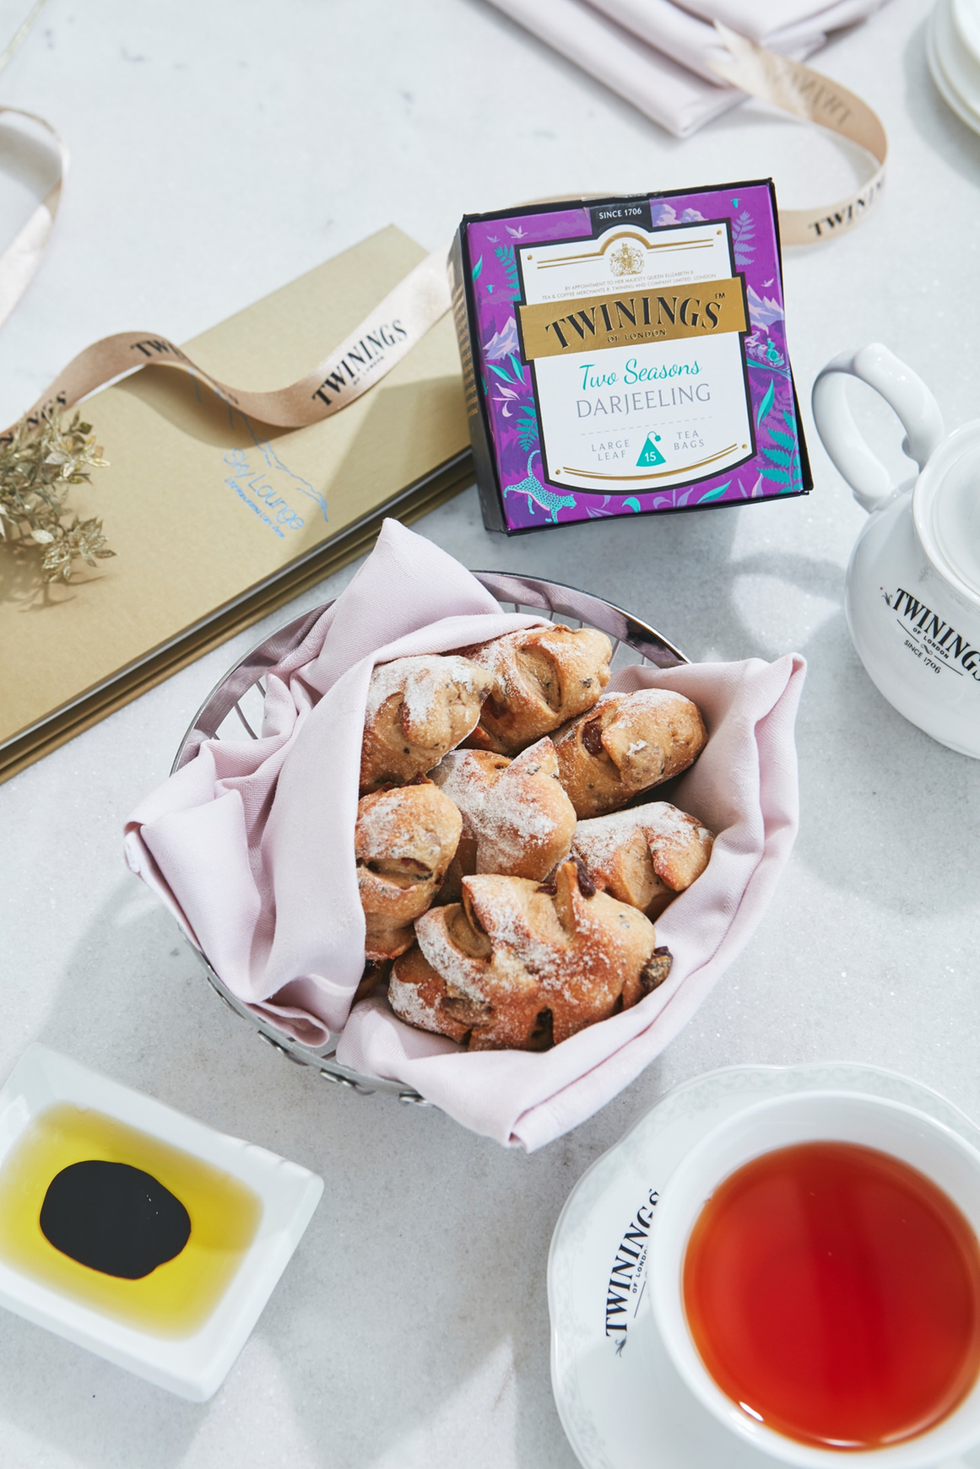 雲月舫在今年秋天推出以「英國皇室御用唐寧茶twinings」為靈感的菜單，成就在地食材、低碳足跡的綠色饗宴！